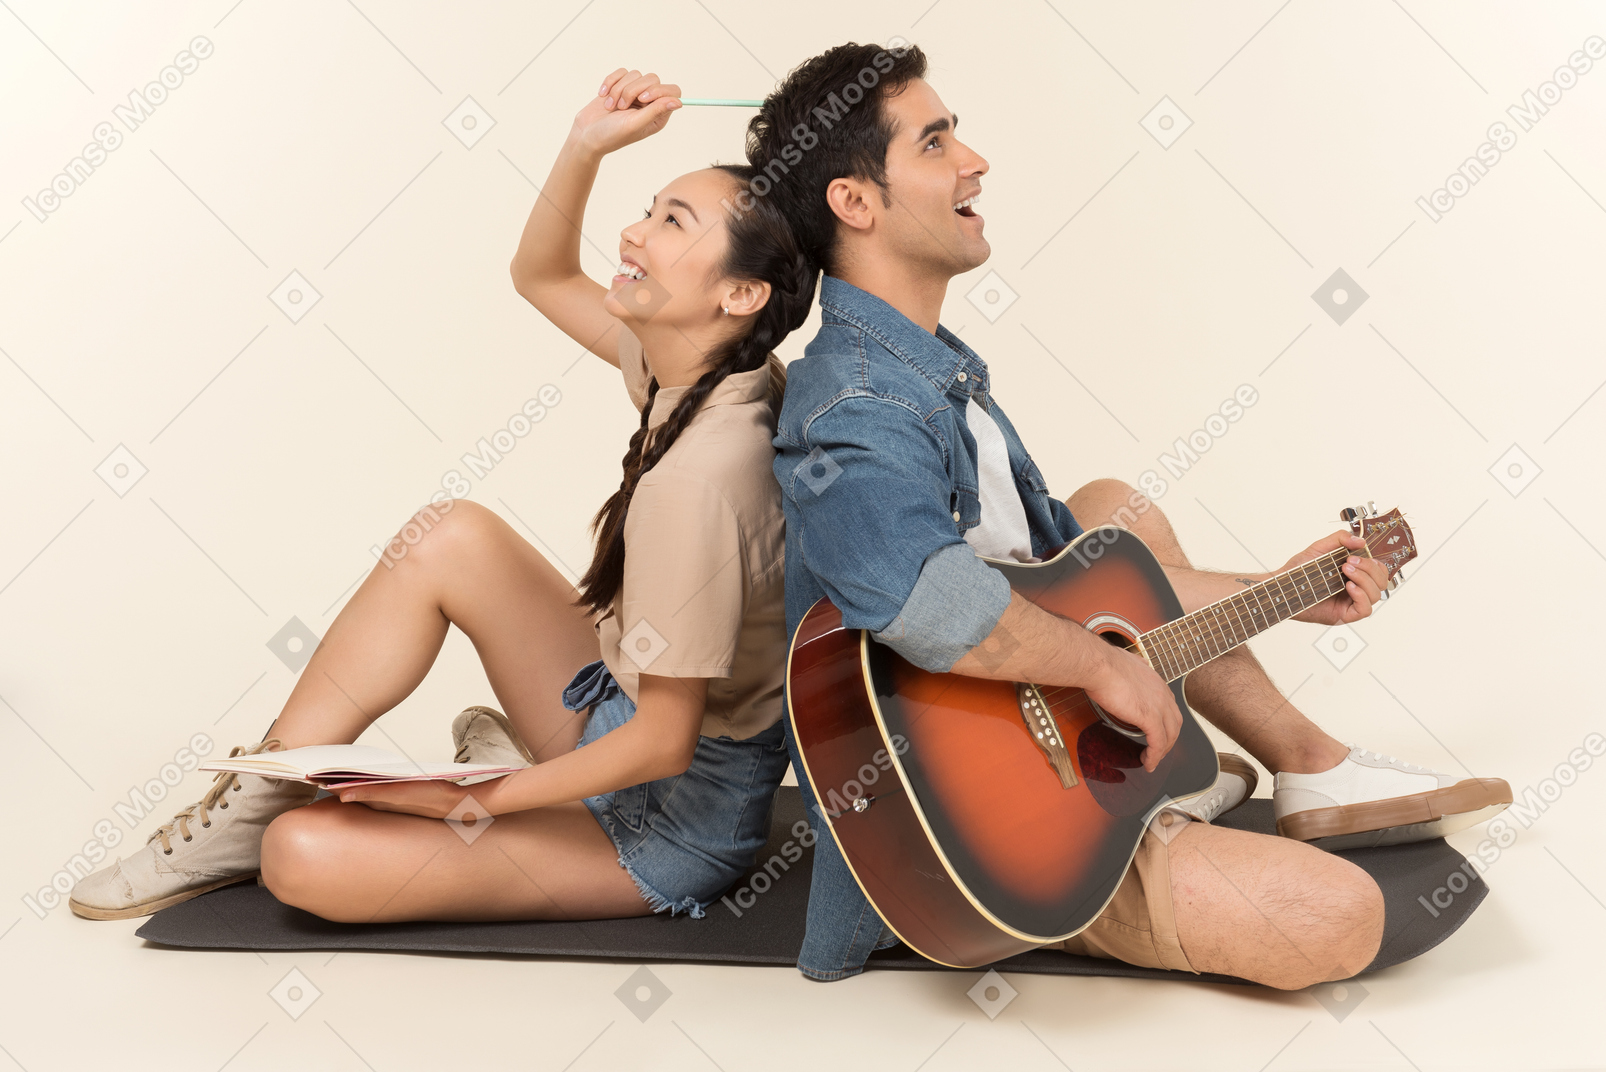 笑って異人種間のカップルに座って背中合わせにギターを弾く男